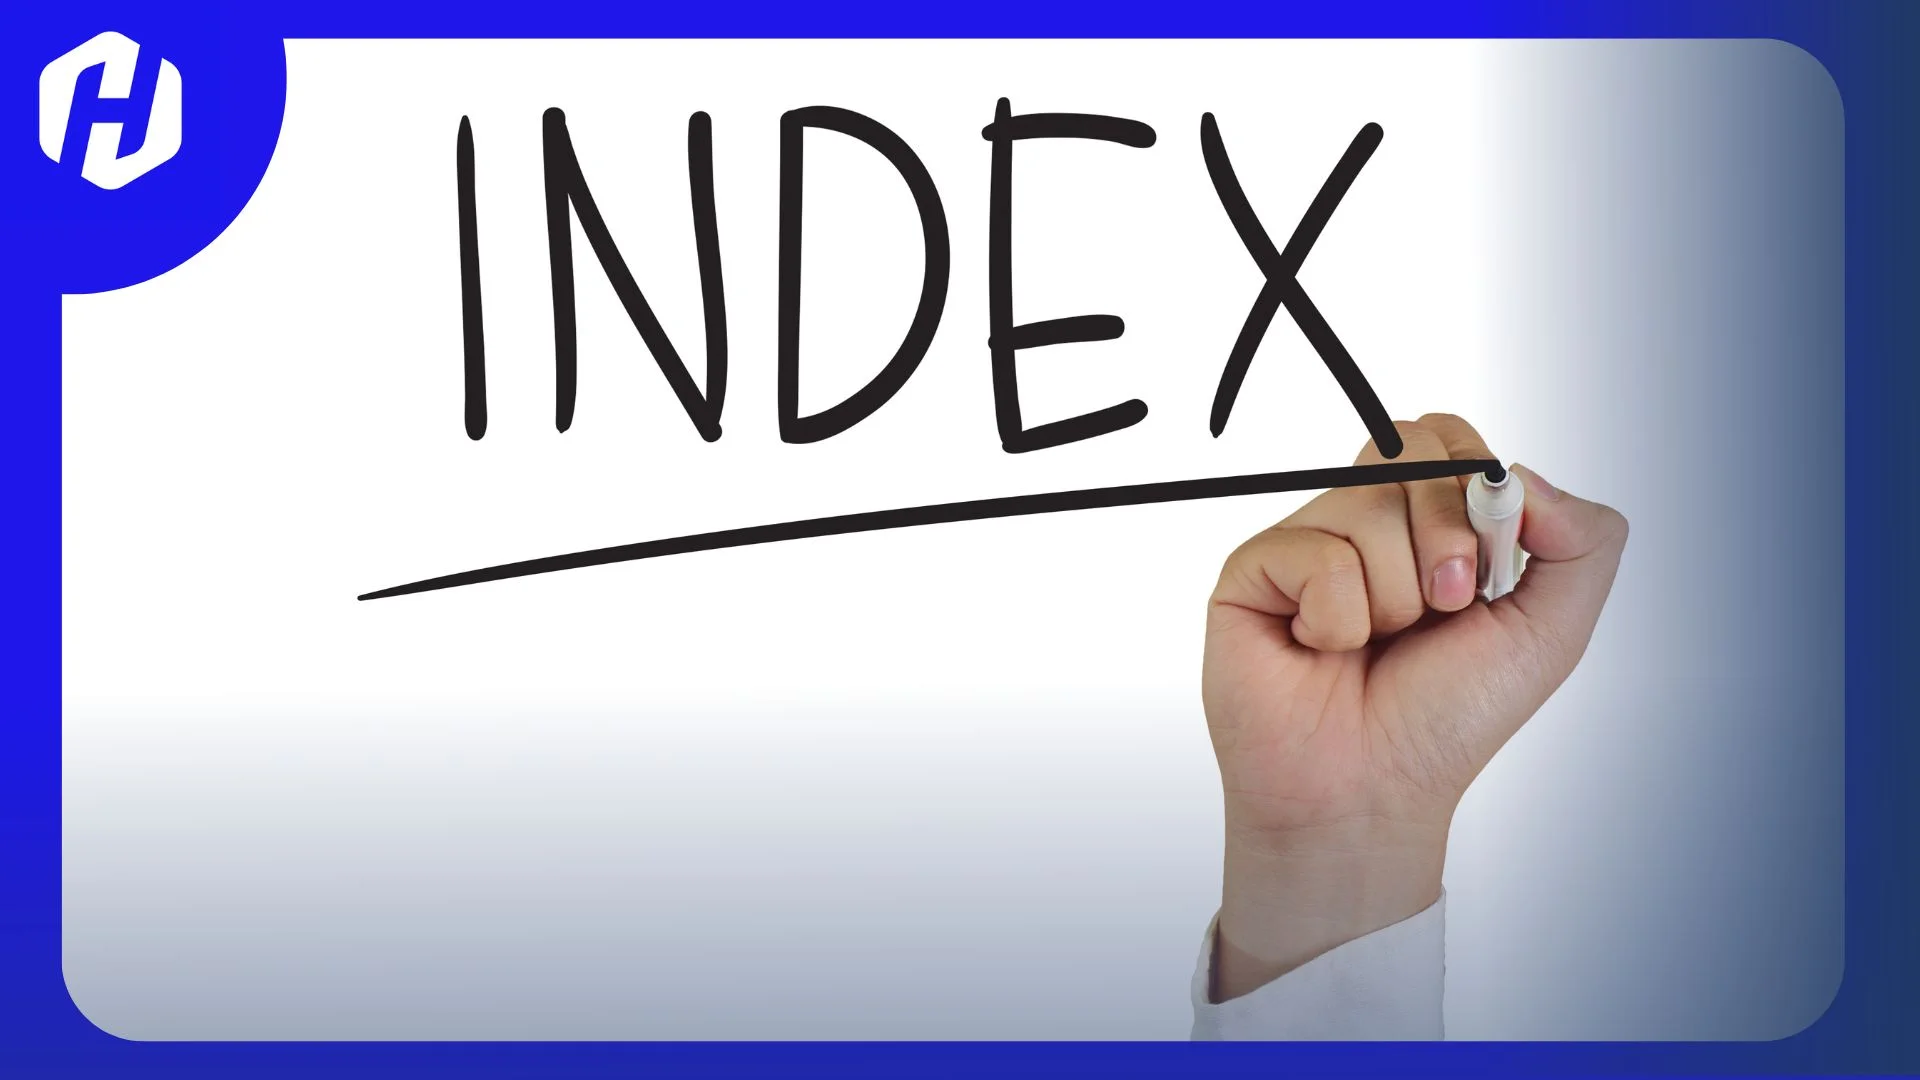 instrumen indeks telah memainkan peran penting dalam perkembangan pasar keuangan.